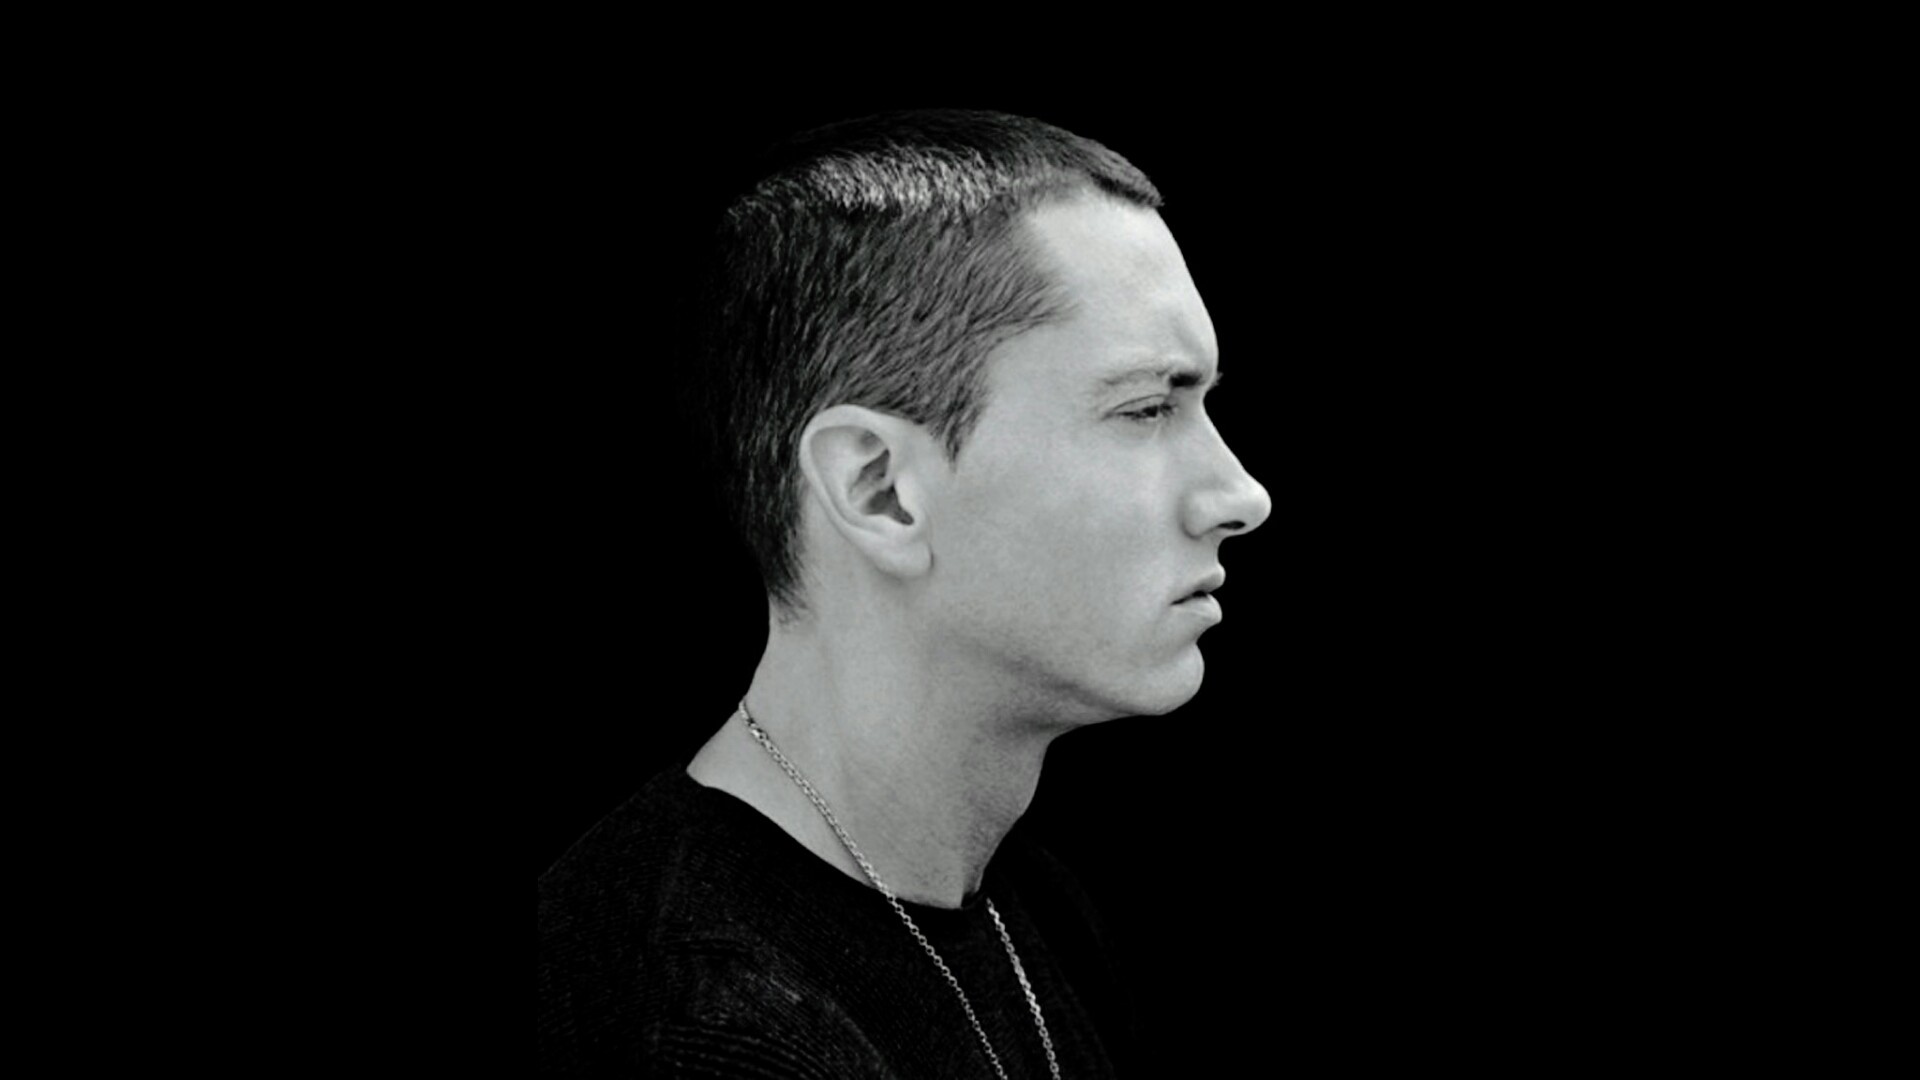 Eminem Wallpaper HD 2018 (69+ images)